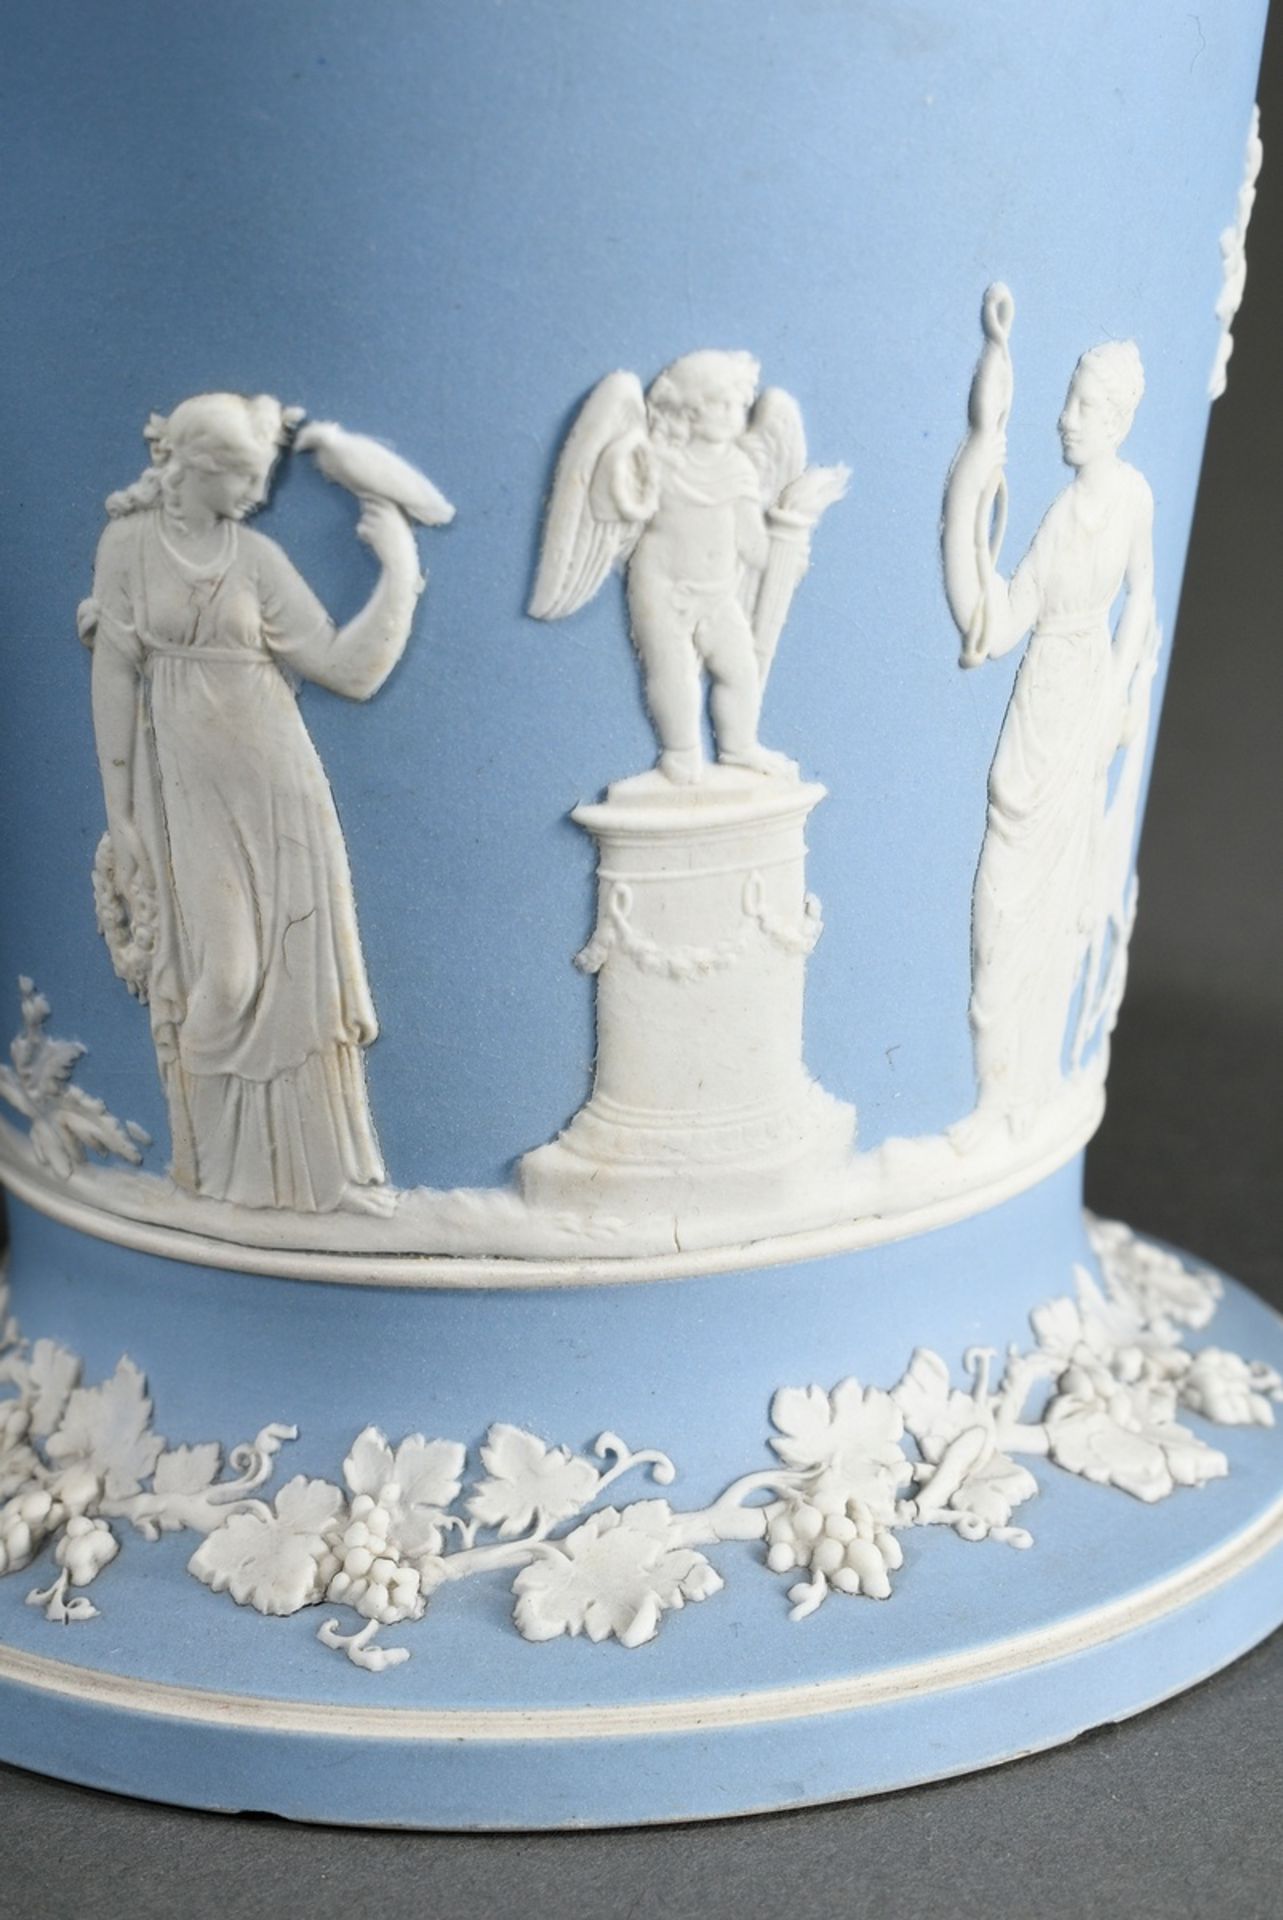 2 Diverse Teile Wedgwood Jasperware mit klassischen Bisquitporzellan Reliefs auf hellblauem Fond: D - Bild 3 aus 9